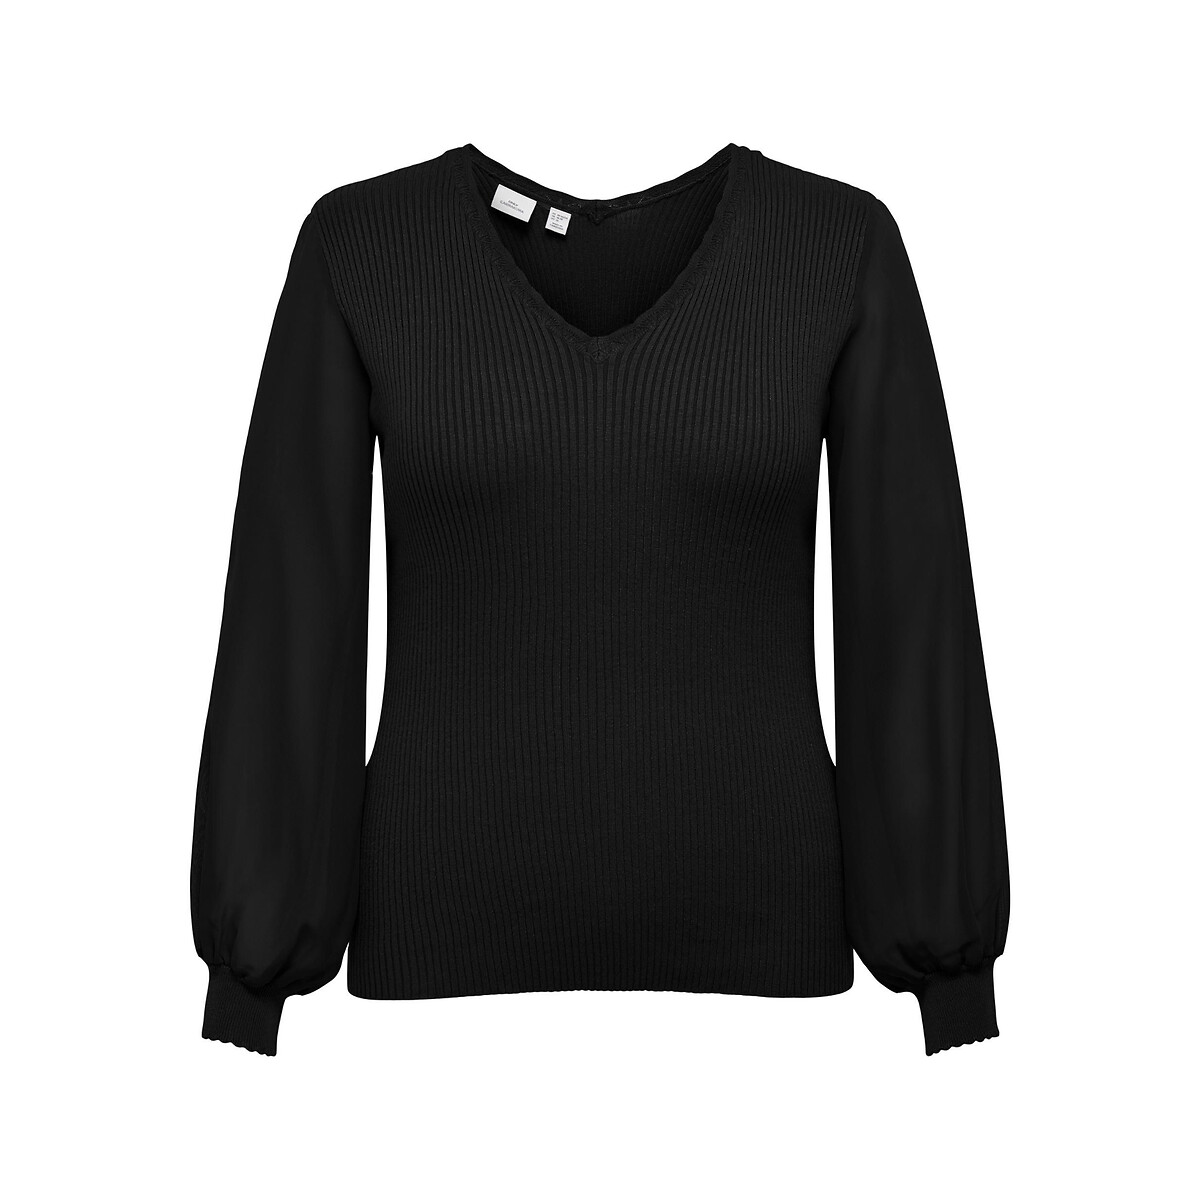 Пуловер с V-образным вырезом из тонкого трикотажа 50/52 (FR) - 56/58 (RUS) черный пуловер с v образным вырезом из тонкого трикотажа l черный